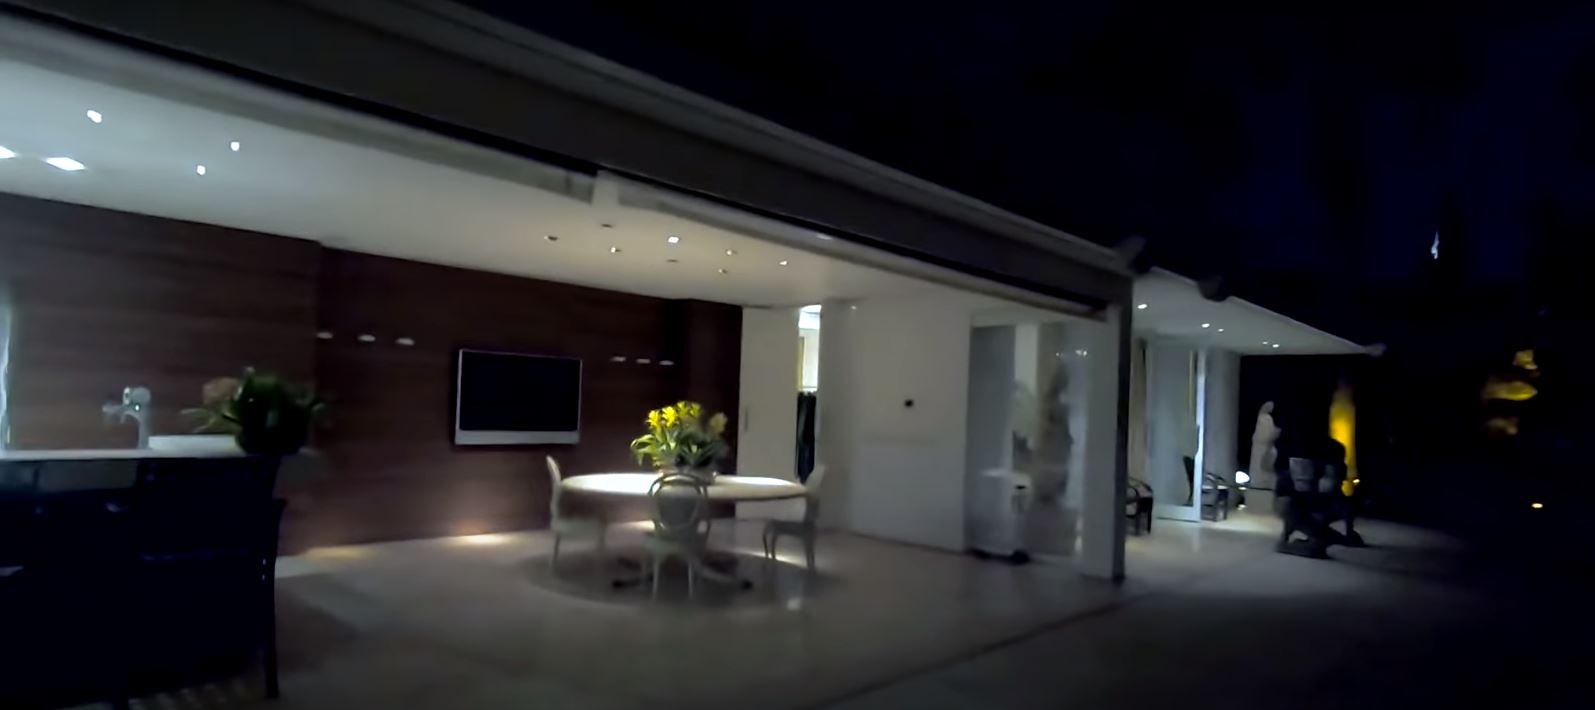 área externa da casa, com abertura entre os ambientes interno e externo e uma televisão e mesa redonda na parte coberta